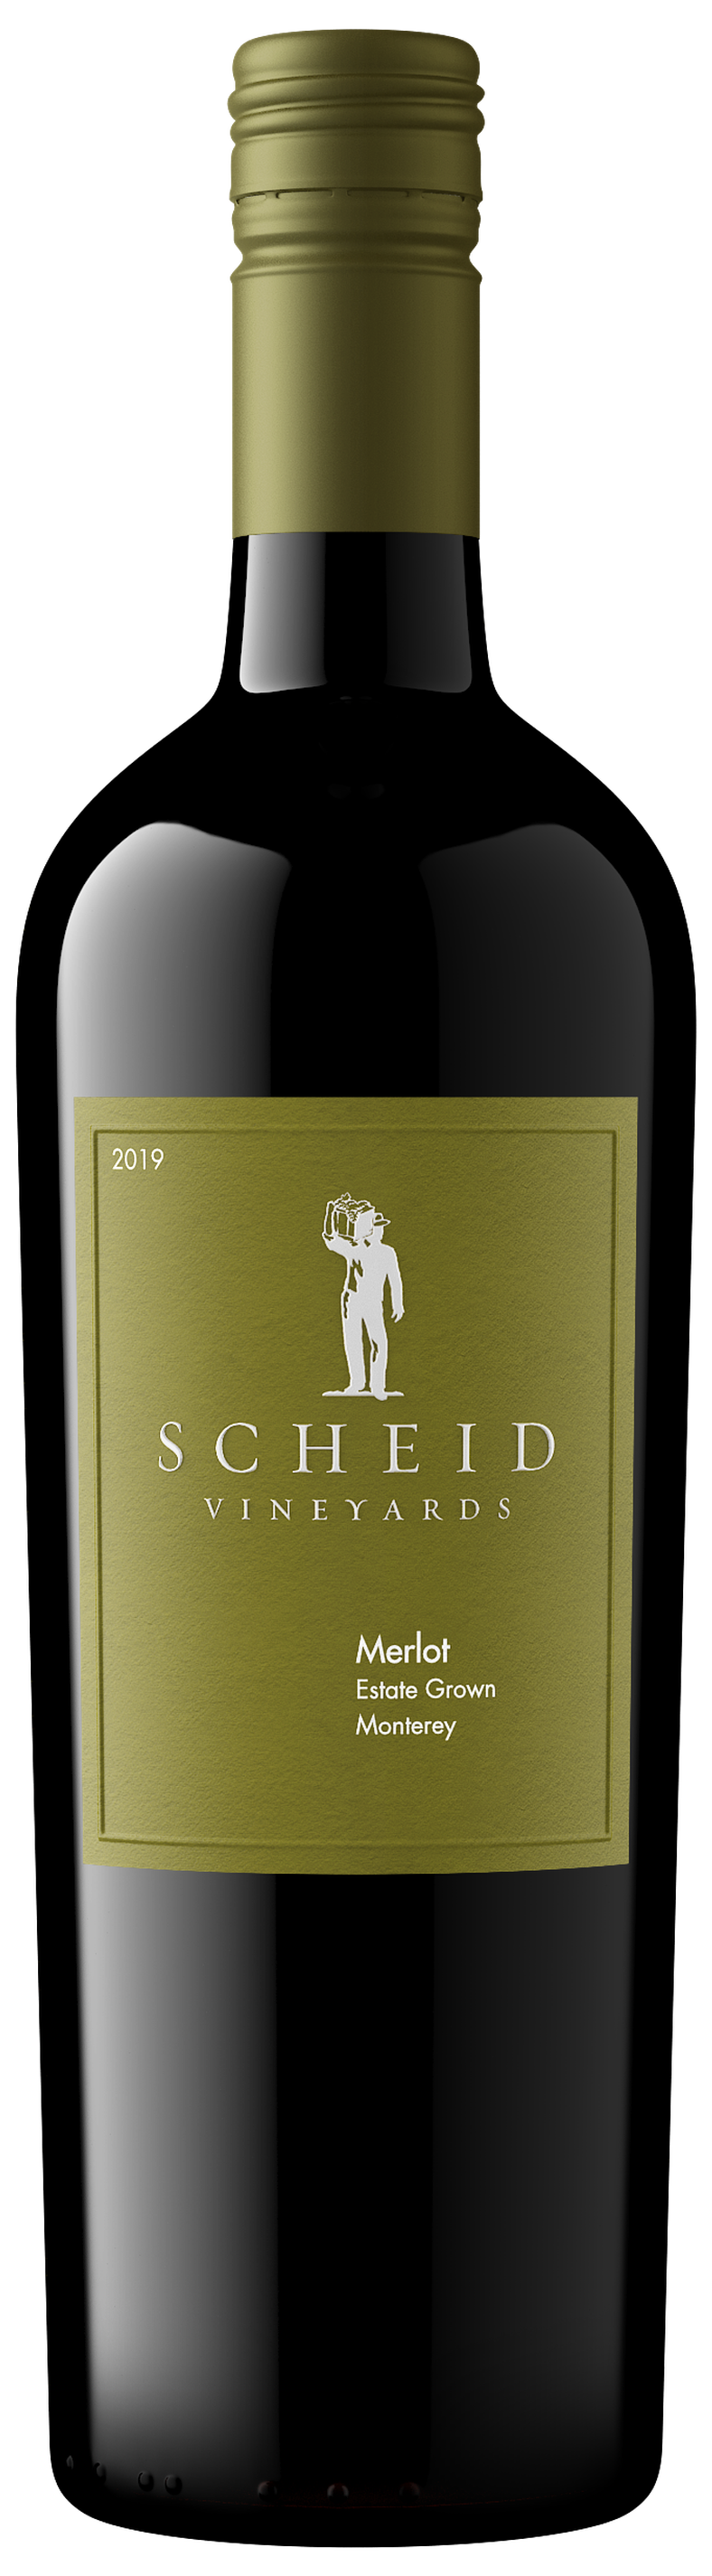 Scheid Vineyards - Products - 2019 Merlot